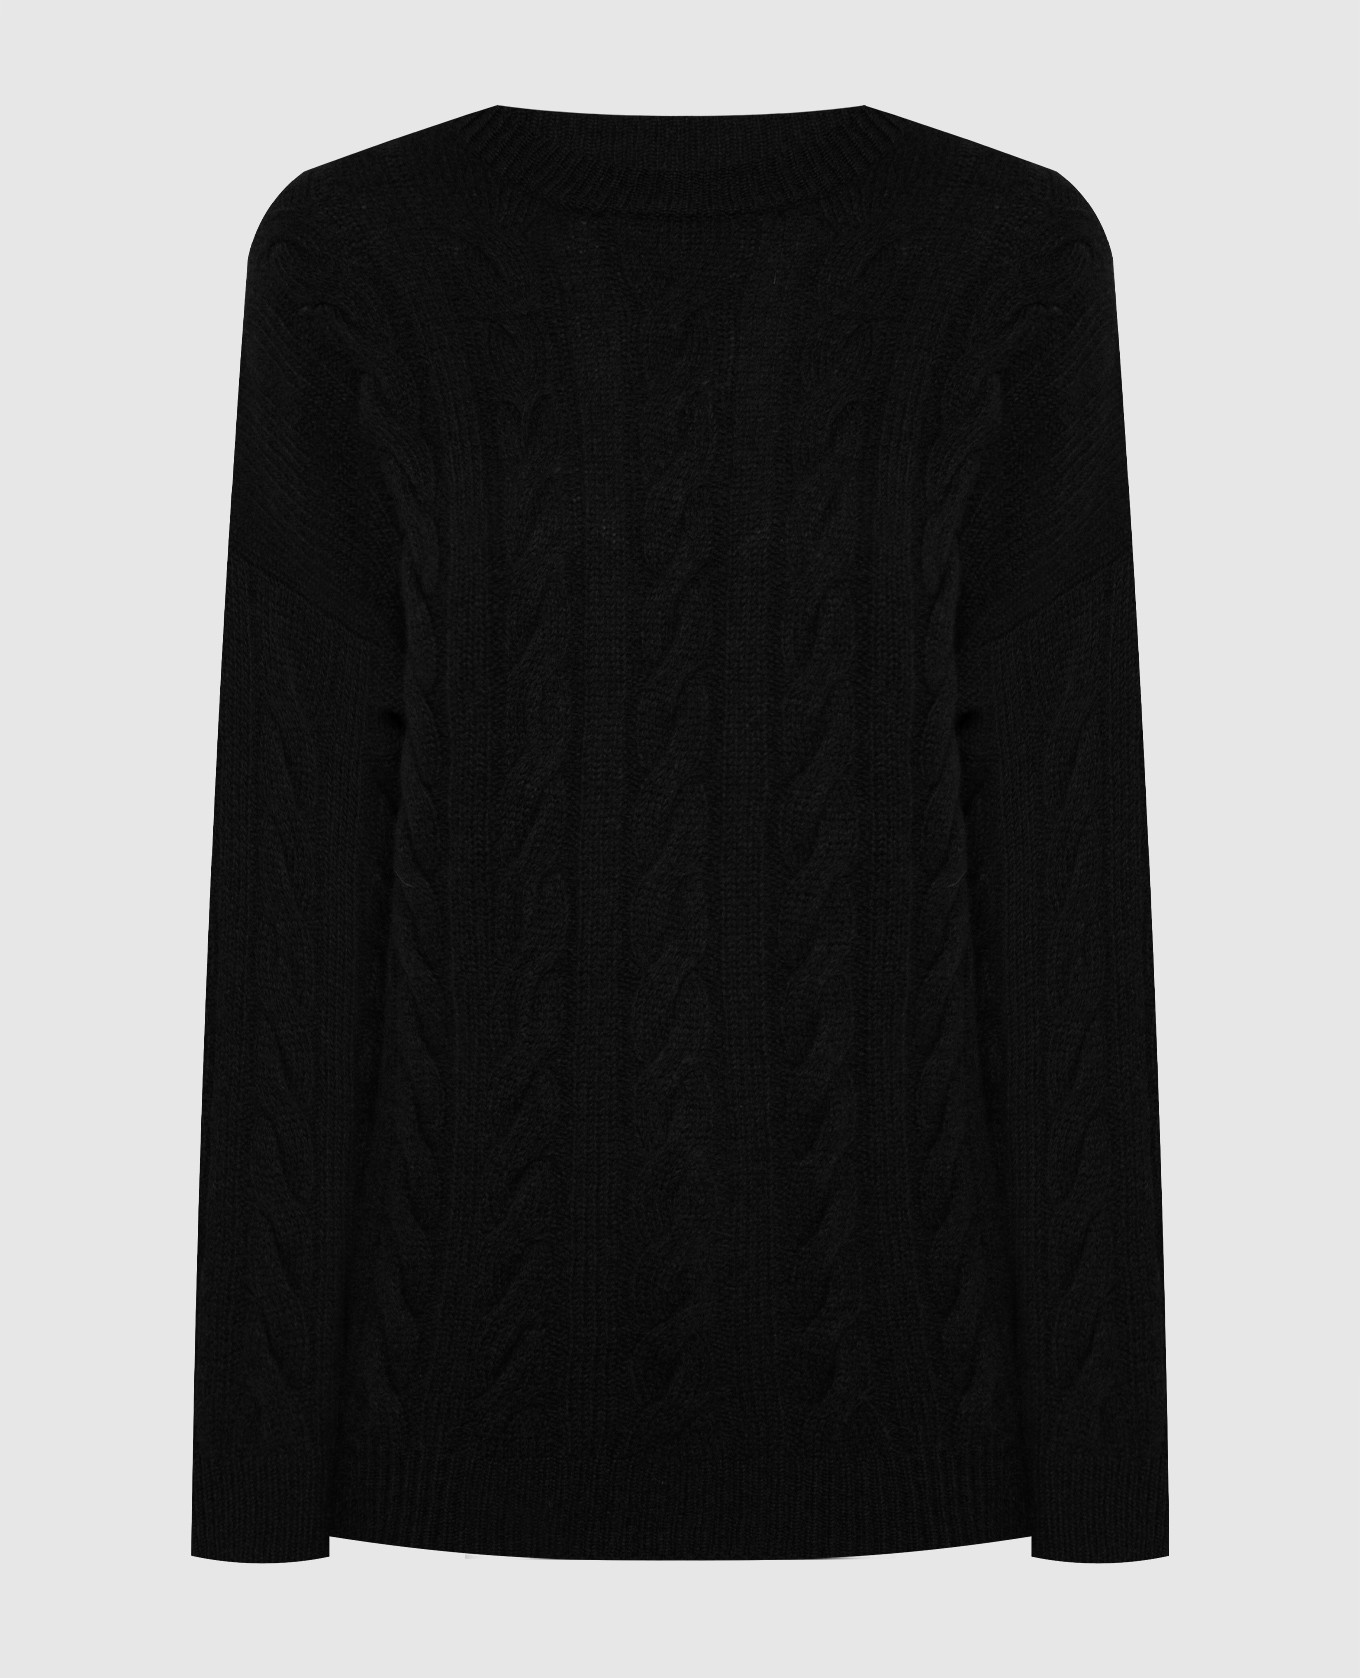 Черный свитер из шерсти и кашемира в фактурный узор.